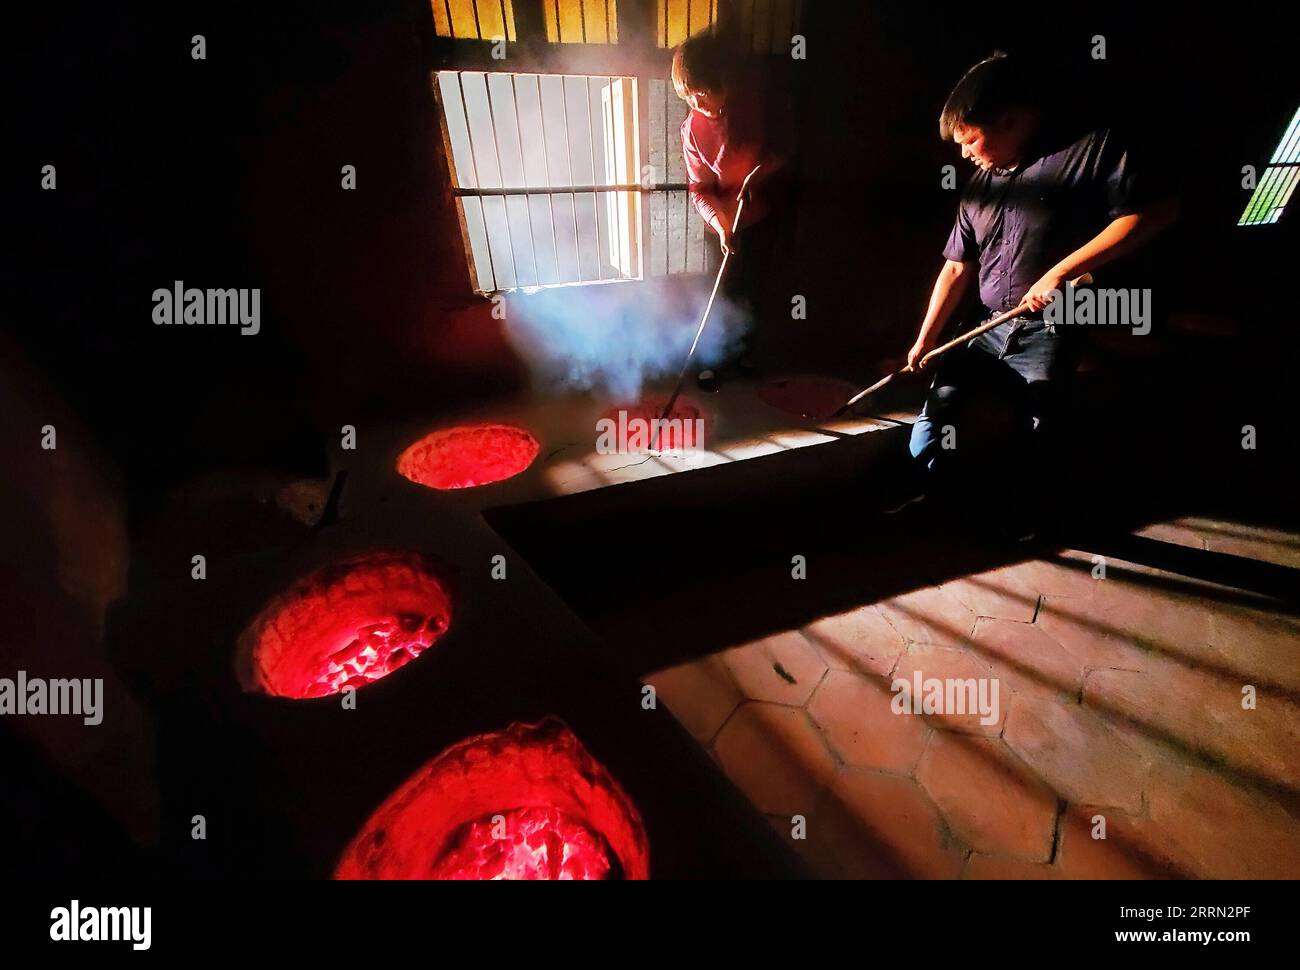 221202 -- WUYISHAN, 2 décembre 2022 -- You Yuqiong L, la seule femme héritière de la technique de fabrication du thé de roche Wuyi, enseigne à son fils Fang Zhou la technique de torréfaction au charbon de bois du thé de roche Wuyi à Wuyishan, dans la province du Fujian du sud-est de la Chine, le 10 mai 2020. Wuyishan, la ville natale du thé de roche, possède une large gamme de variétés de thé de roche. La technique de fabrication du thé de roche Wuyi, une variété oolong spéciale avec un goût particulièrement torréfié et un arôme floral et fruité, comprend plus de 10 procédures de traitement, y compris la récolte du thé, le flétrissement, la fixation, la torsion, le séchage et ainsi de suite. Hérités et Banque D'Images